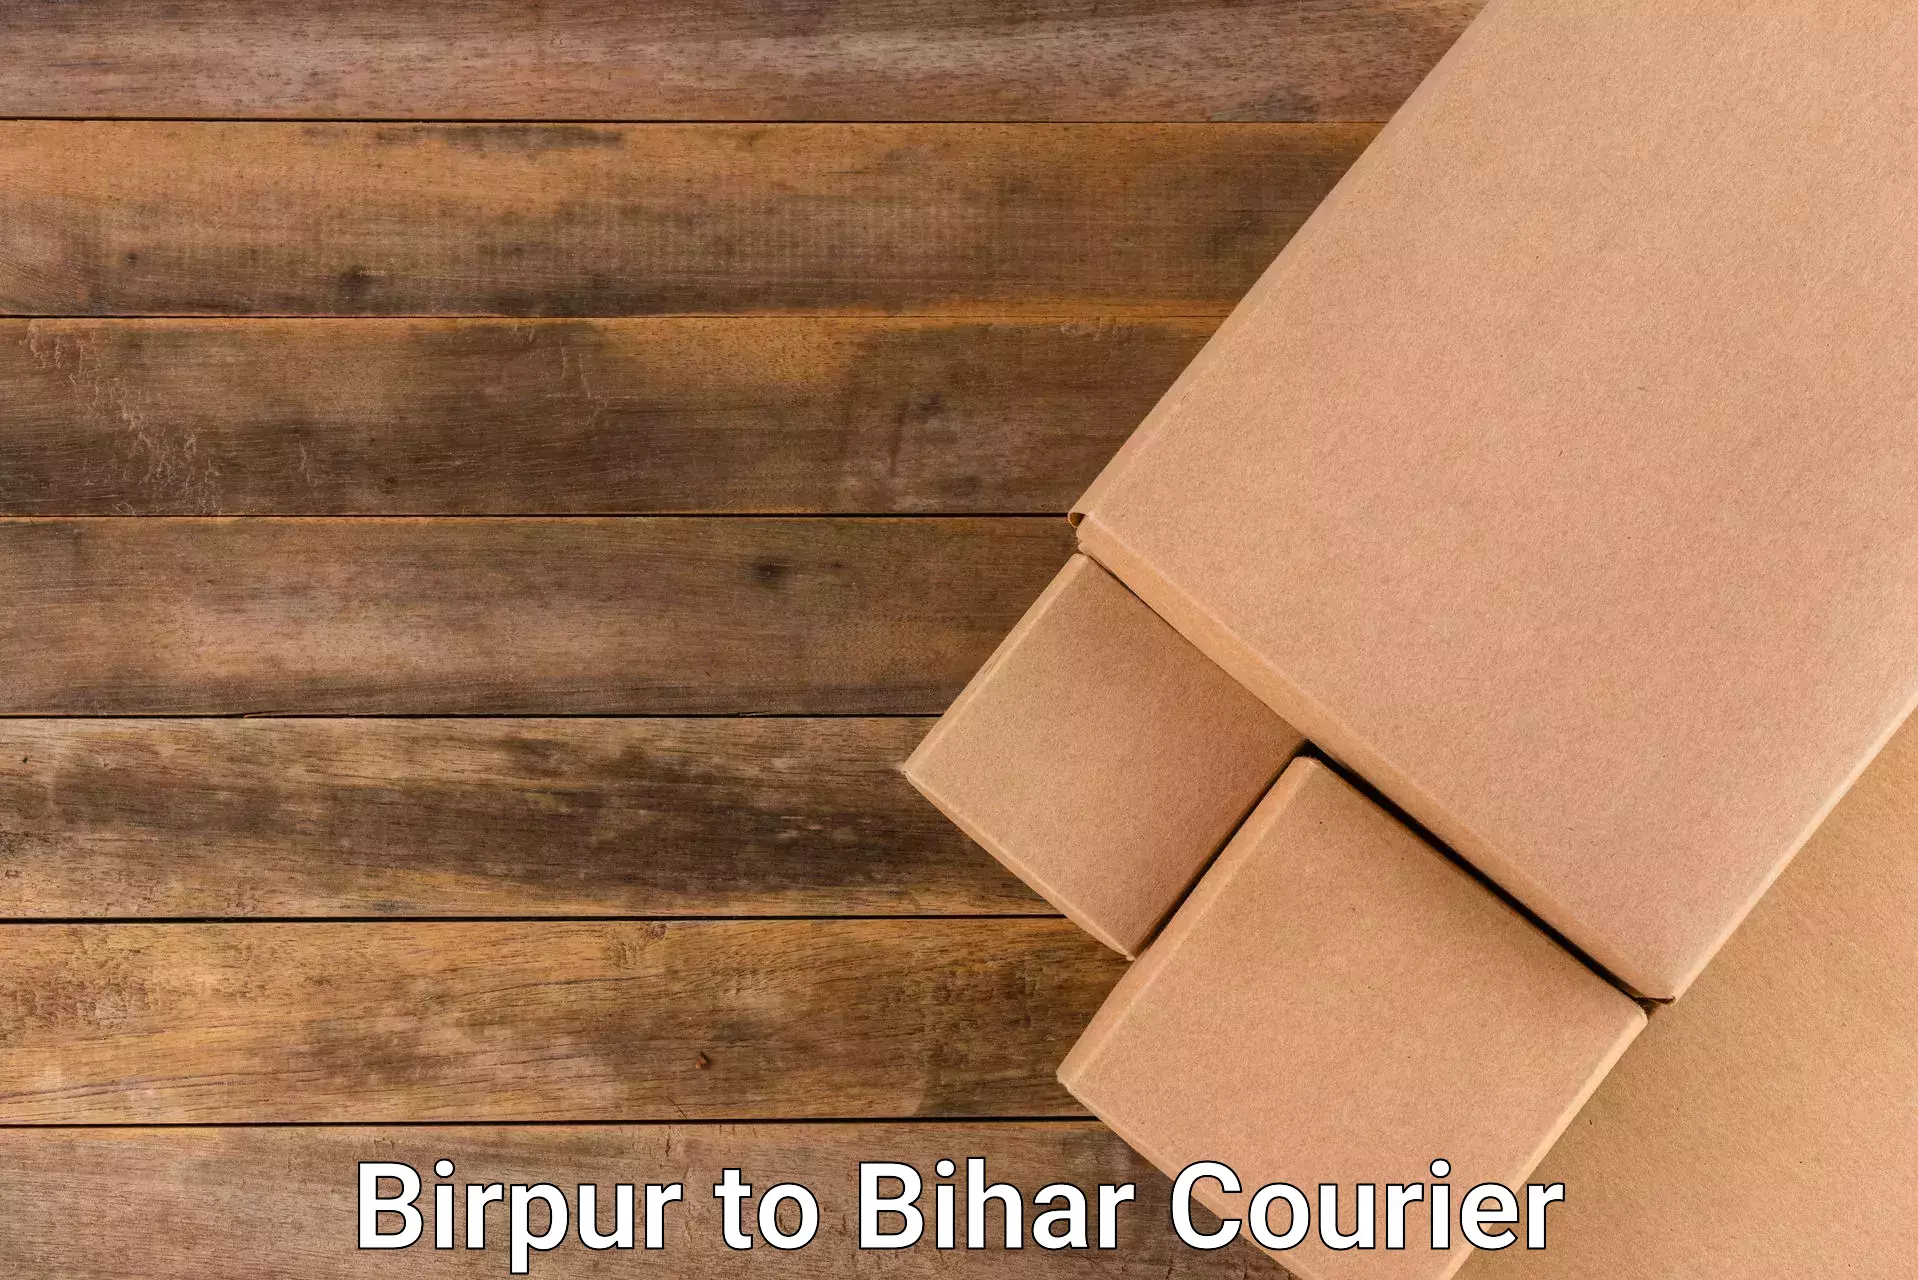 Efficient cargo services Birpur to Bihar